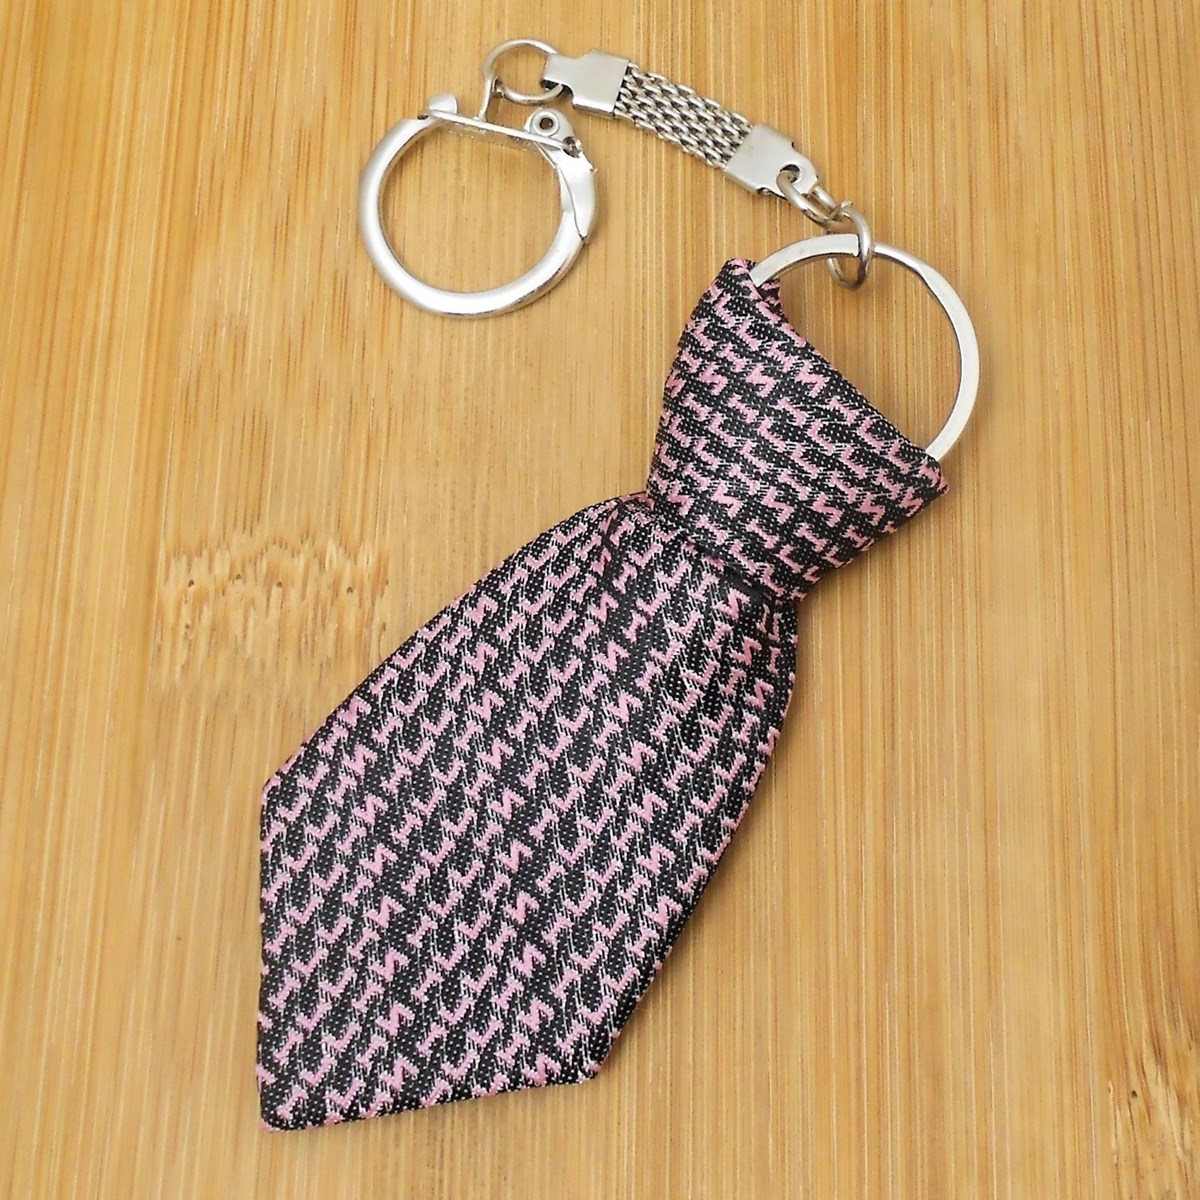 Porte-clés cravate en tissu fond noir lettre alphabet rose argenté - vue 2